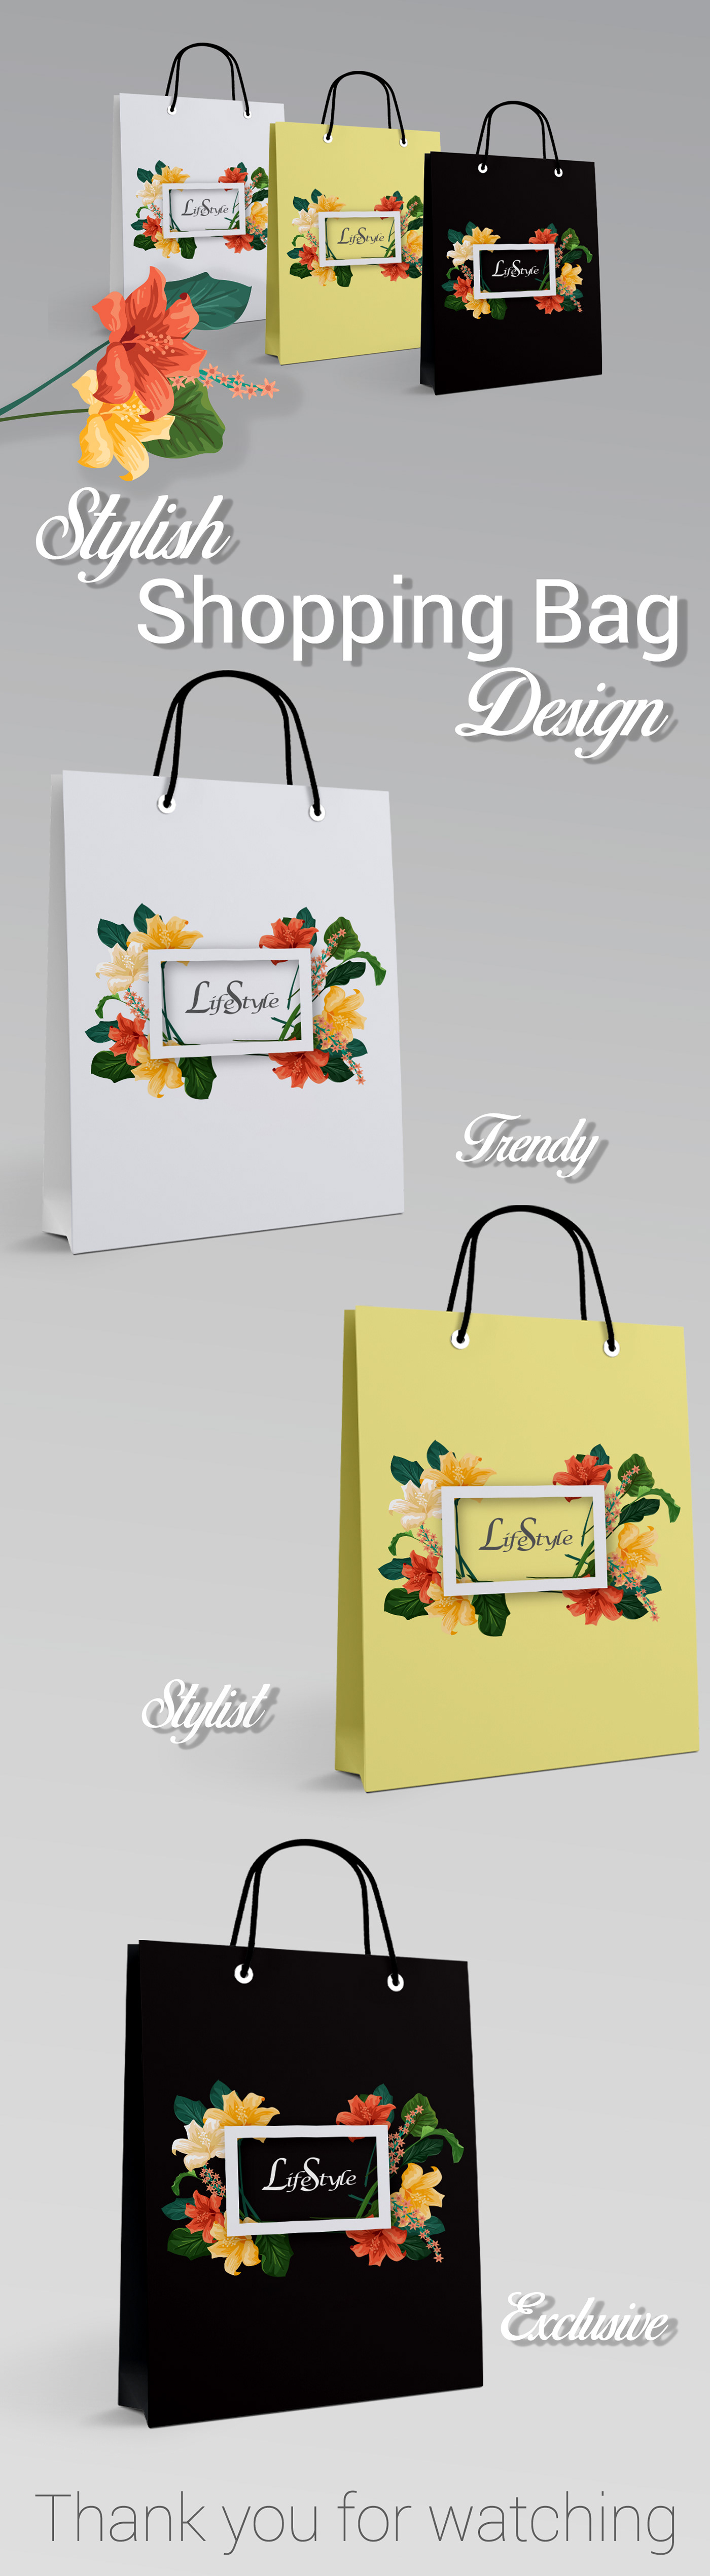 shopping bag emrul designeremrul priyocanvas bag design packaging design